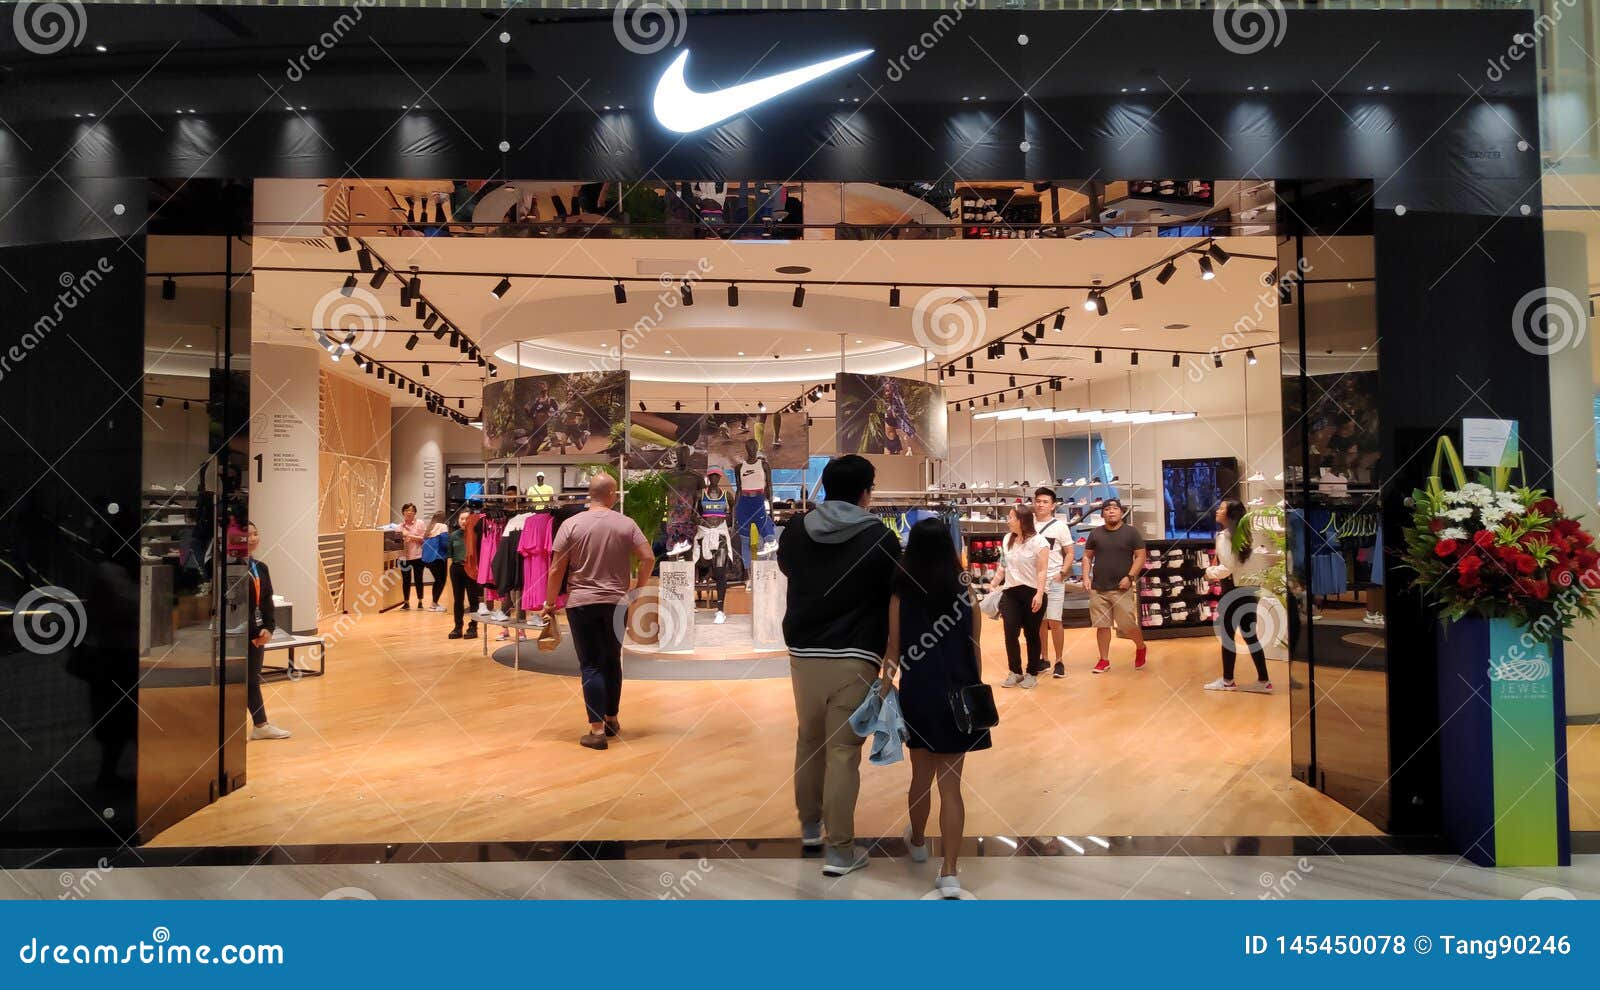 Nike Shop Localiz? Dentro Del Aeropuerto De Jewal Changi En Singapur de archivo editorial - Imagen de compra, ropas: 145450078